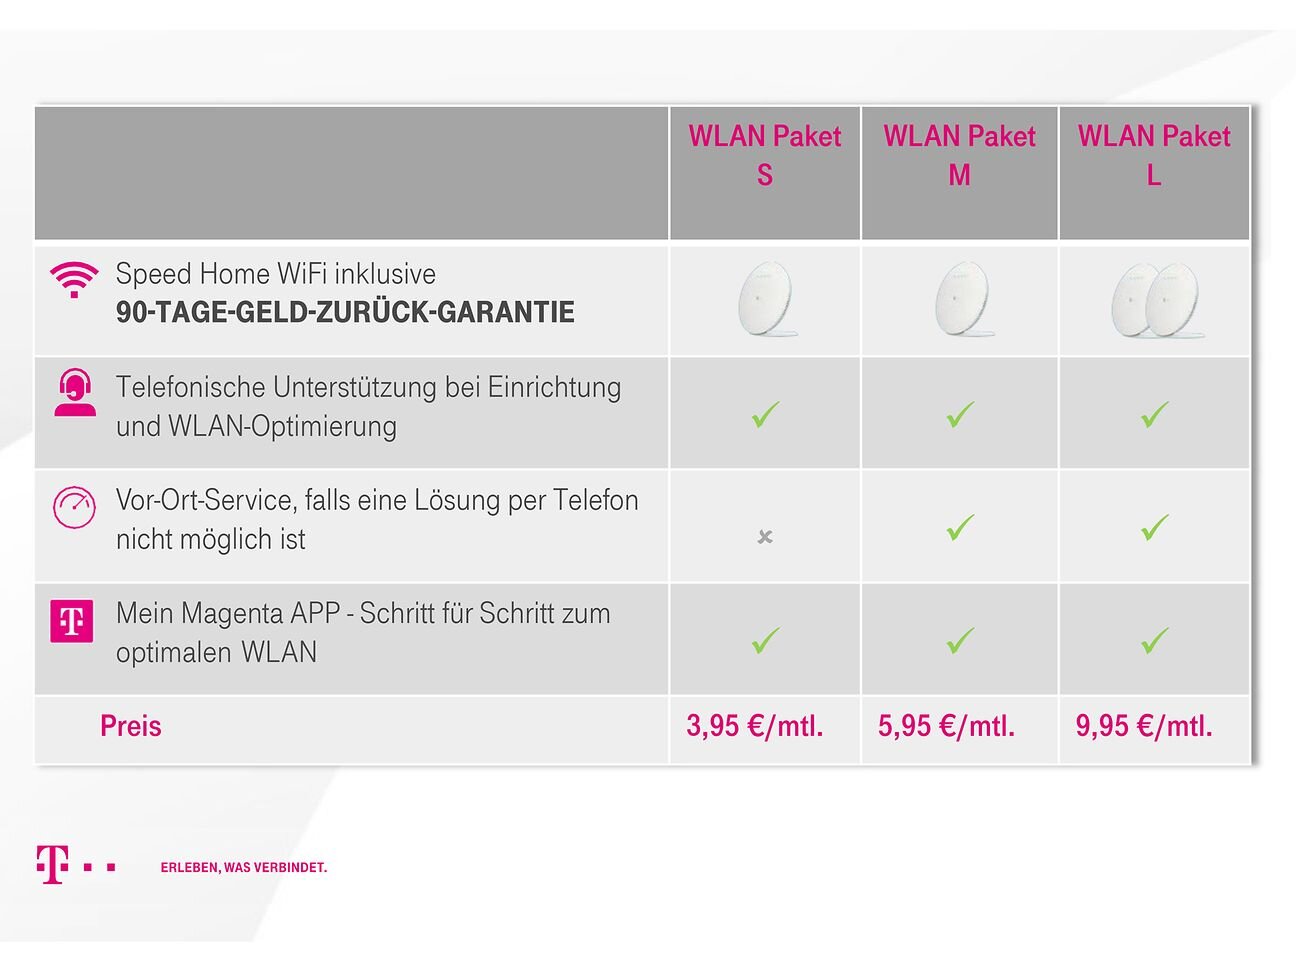 نظرة عامة على حزم WLAN الخاصة بشركة Telekom